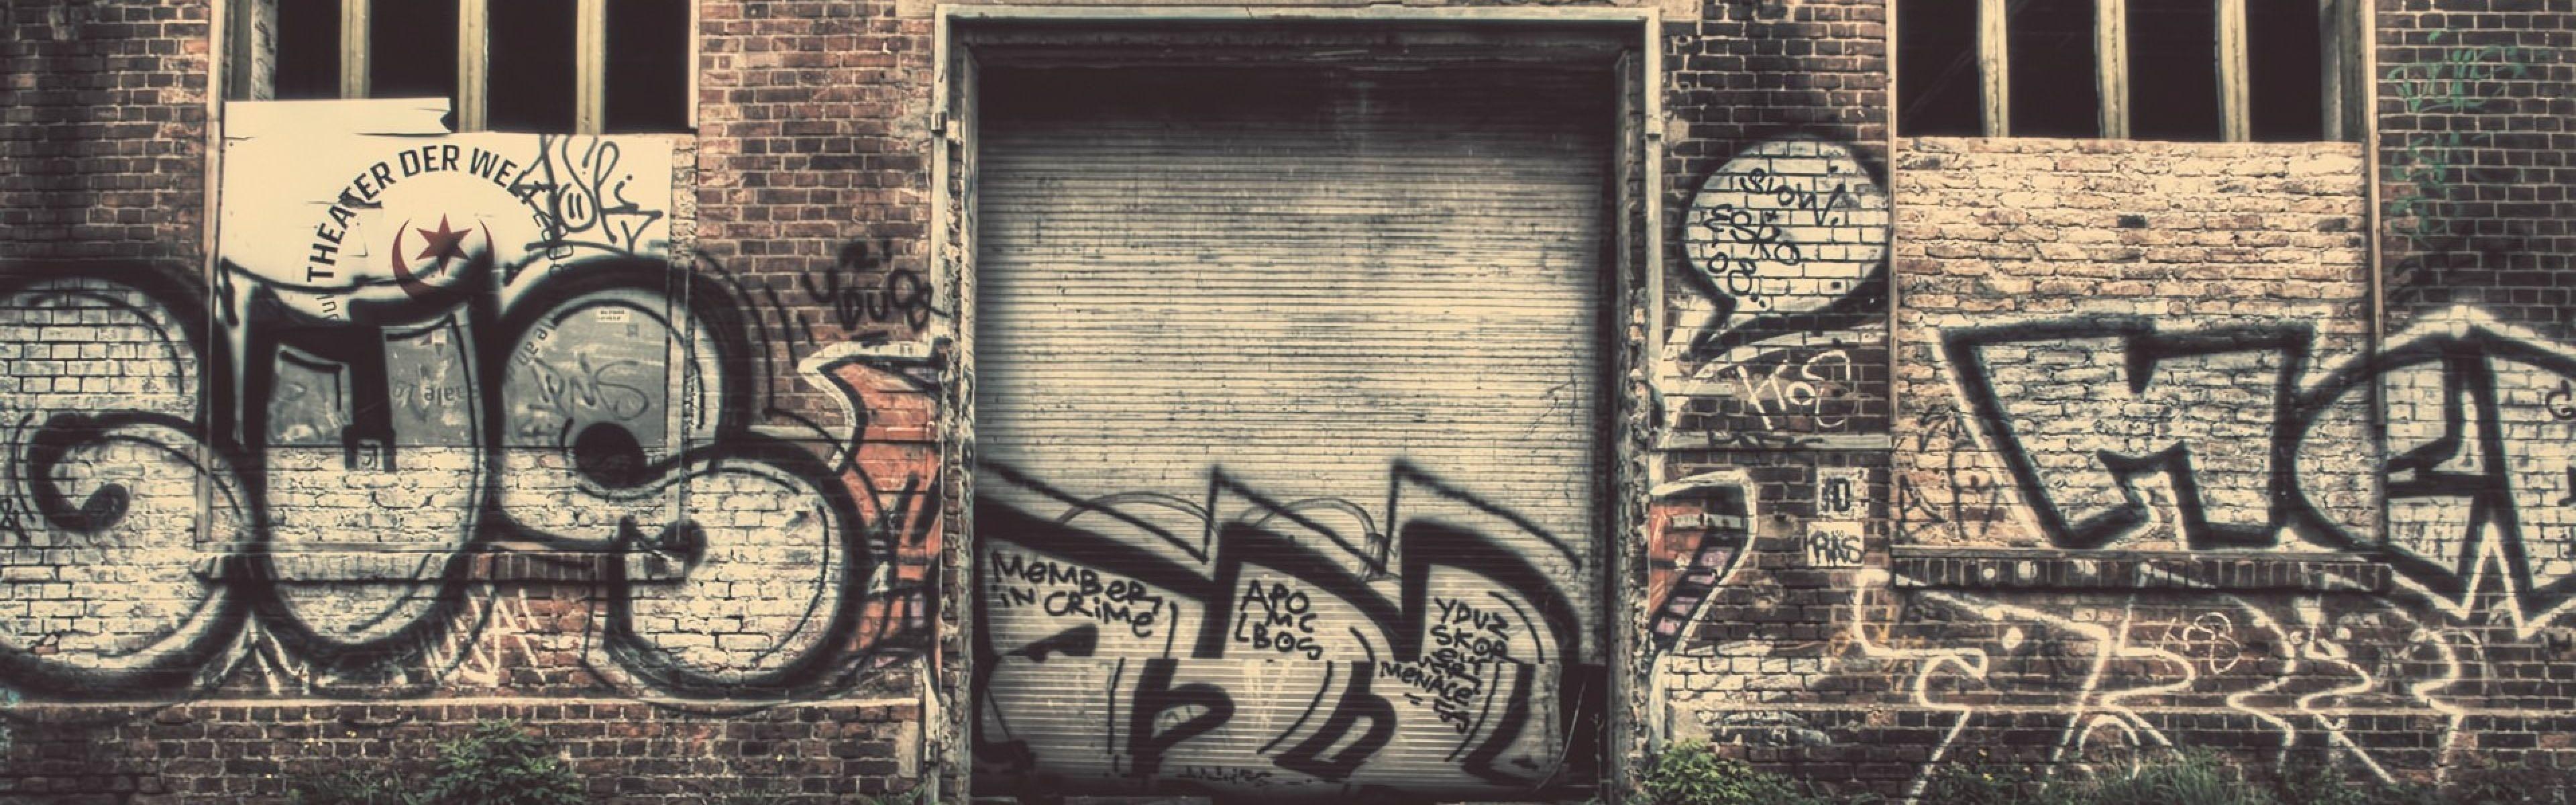 граффити для стима фото 117